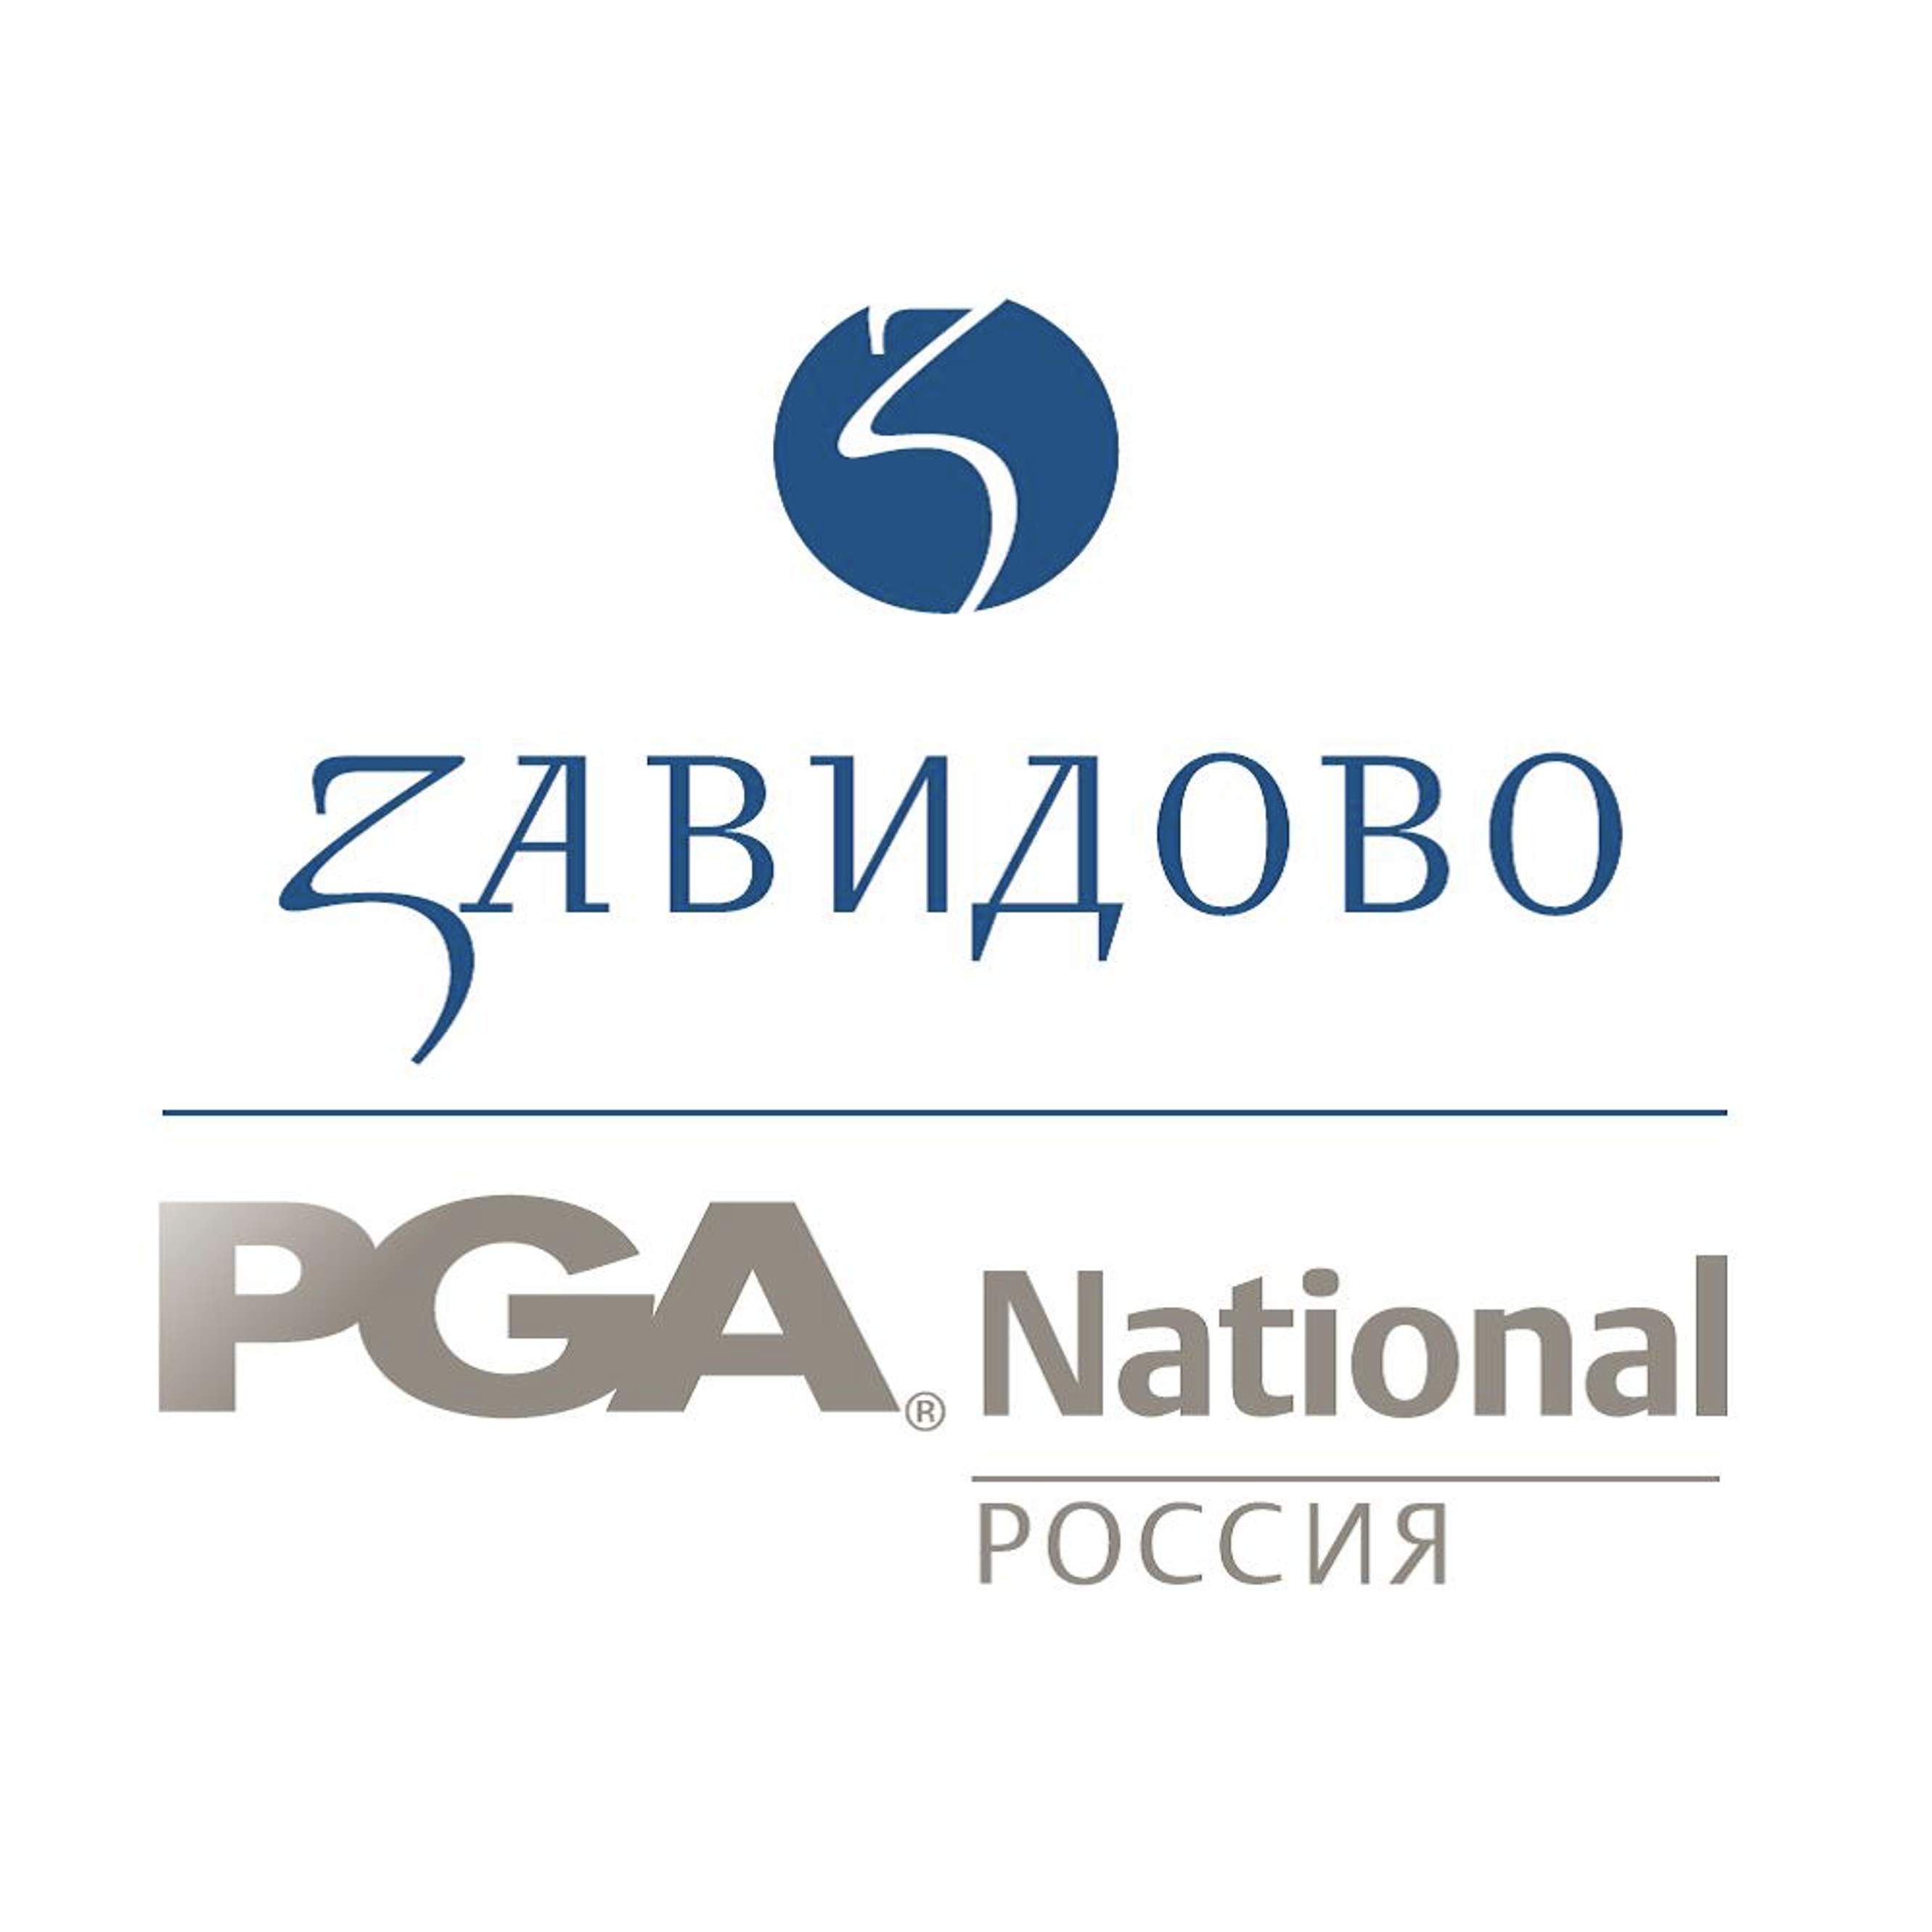 Завидово PGA National Россия